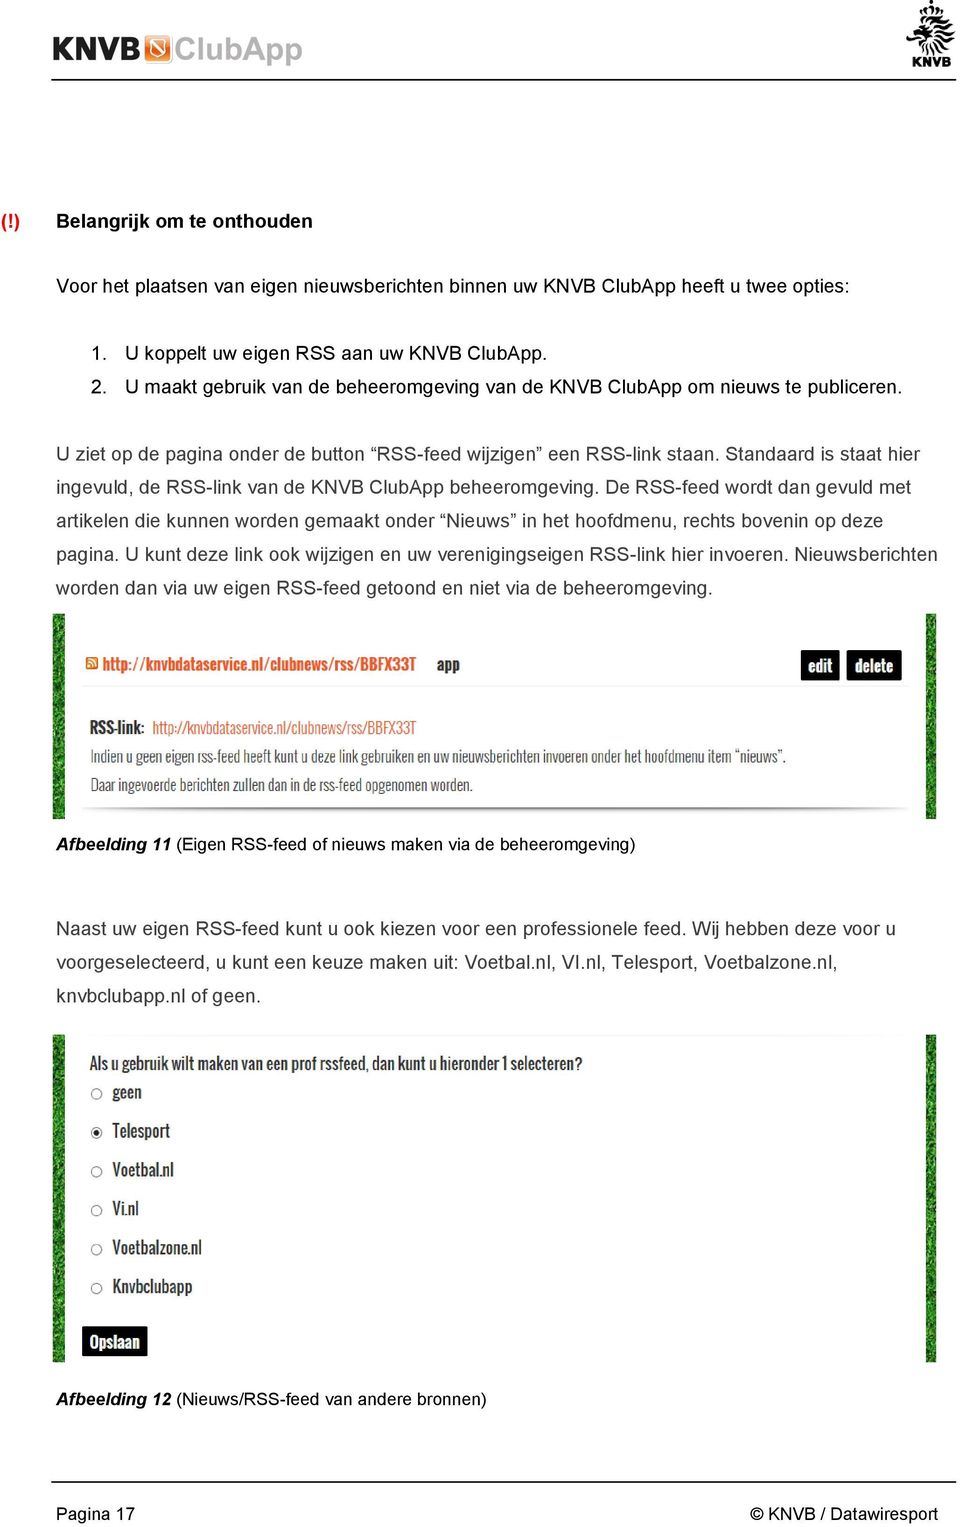 Standaard is staat hier ingevuld, de RSS-link van de KNVB ClubApp beheeromgeving.